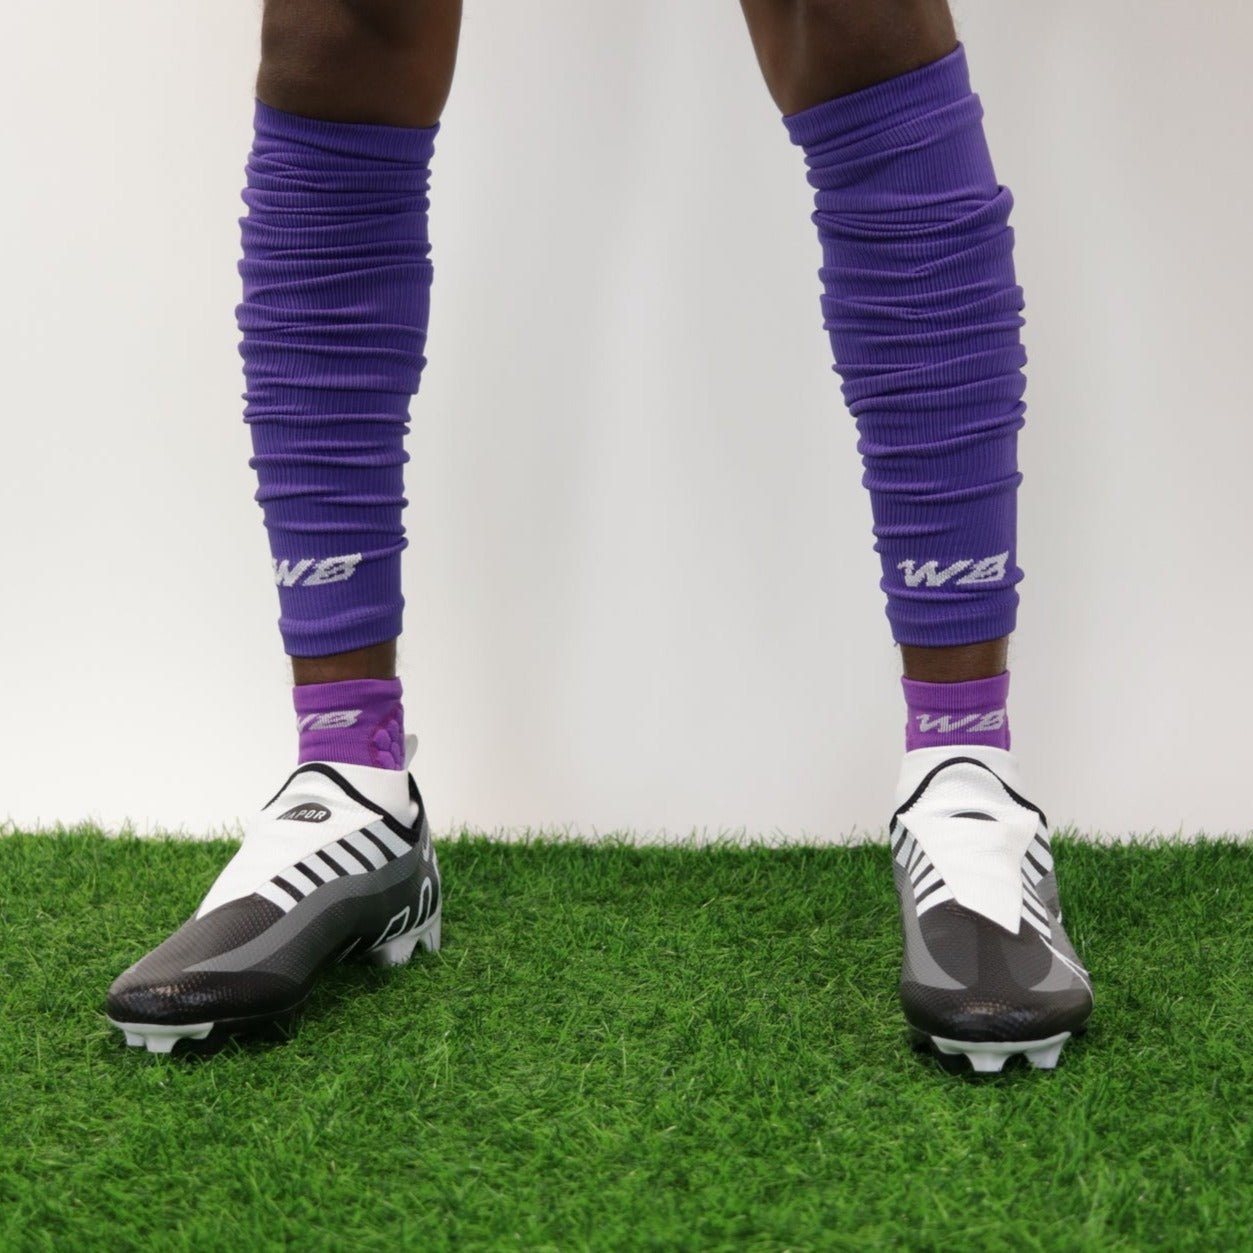 ADULT FOOTBALL LEG SLEEVES 2.0 (PURPLE) - We Ball Sports